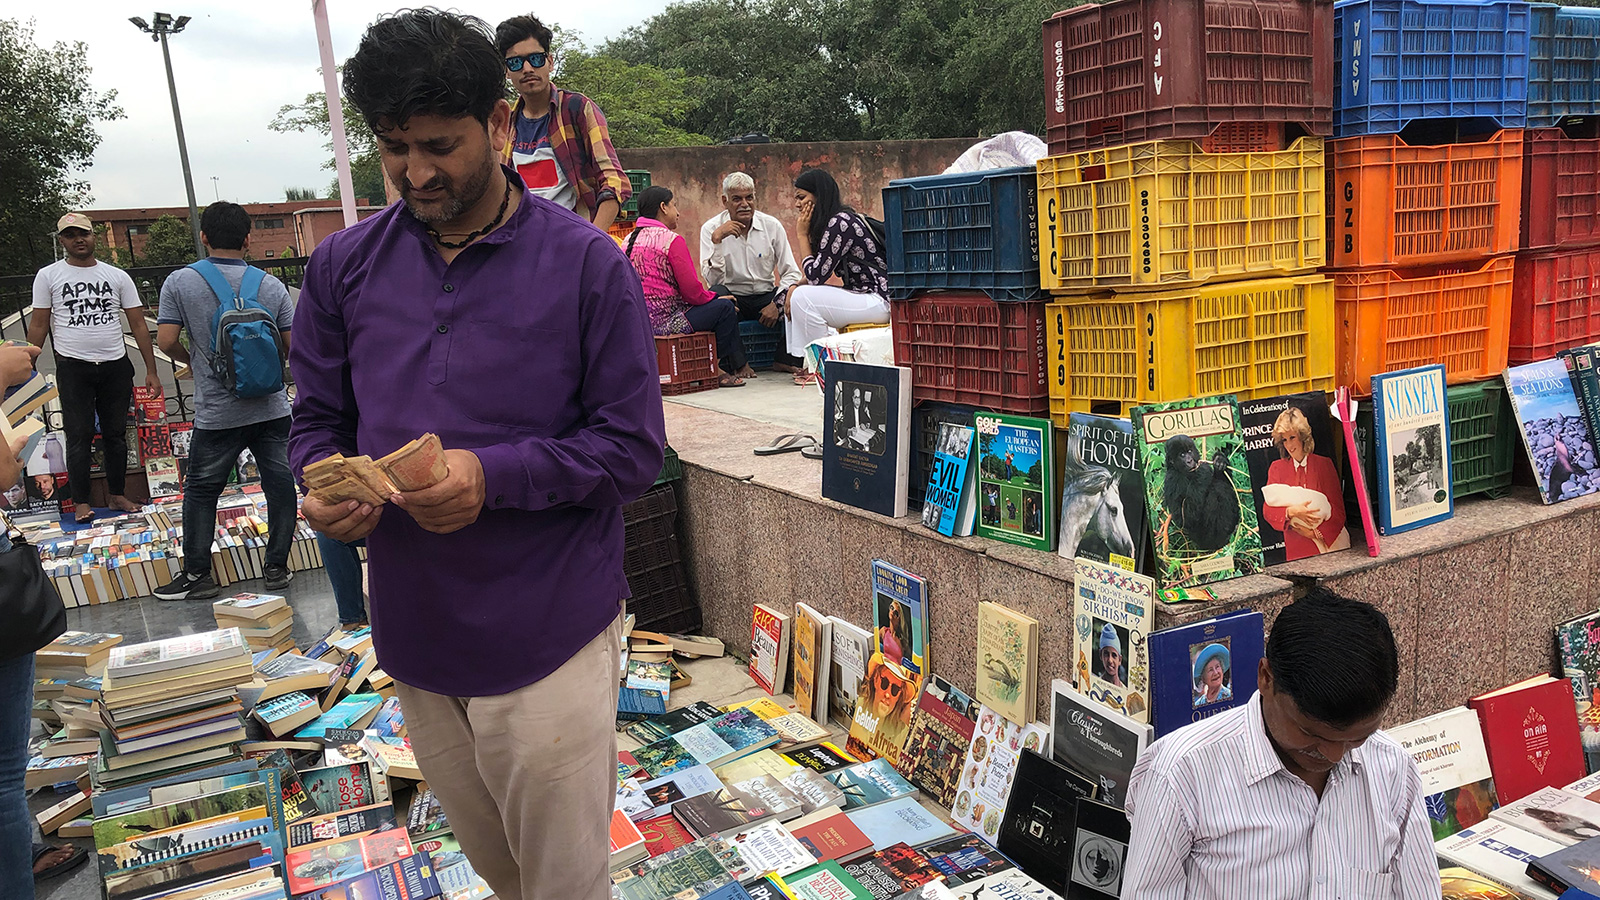 ‪السوق يستضيف عشاق الكتب منذ 1964 ويزوره آلاف من الناس كل أسبوع وخاصة الطلاب والمعلمين‬ (الجزيرة)